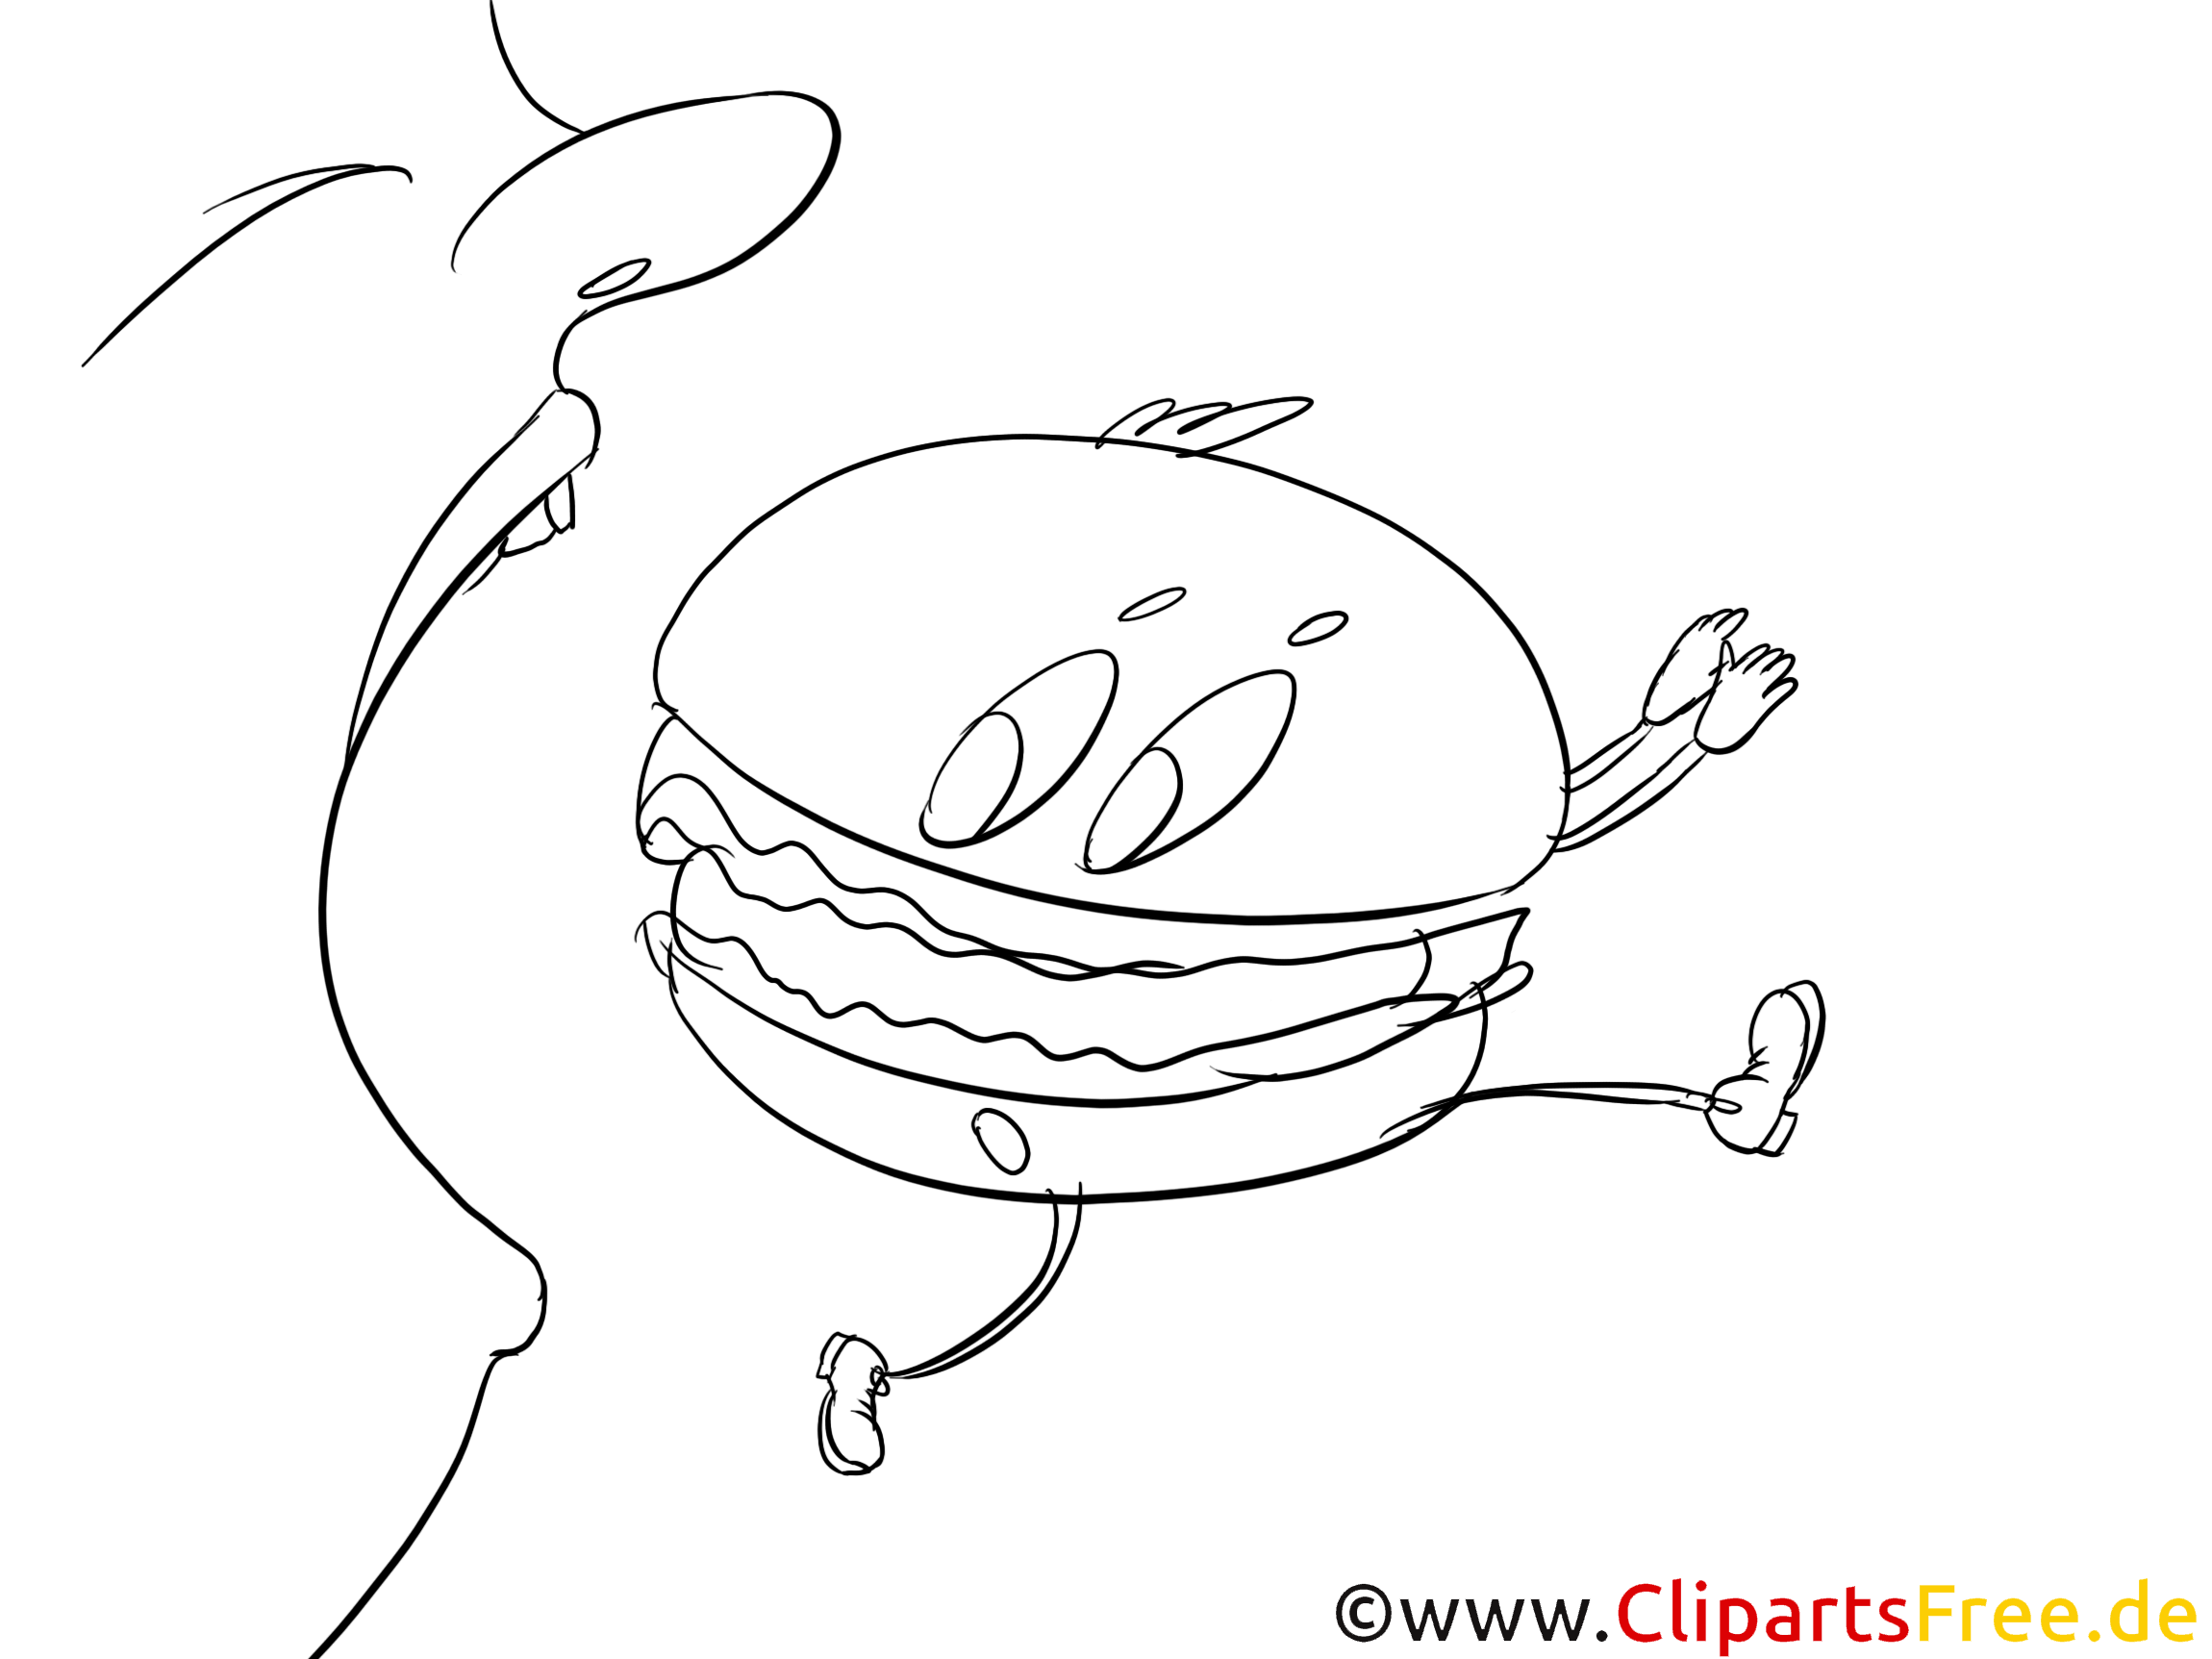 Hamburger cliparts gratuis – Cartoons à imprimer